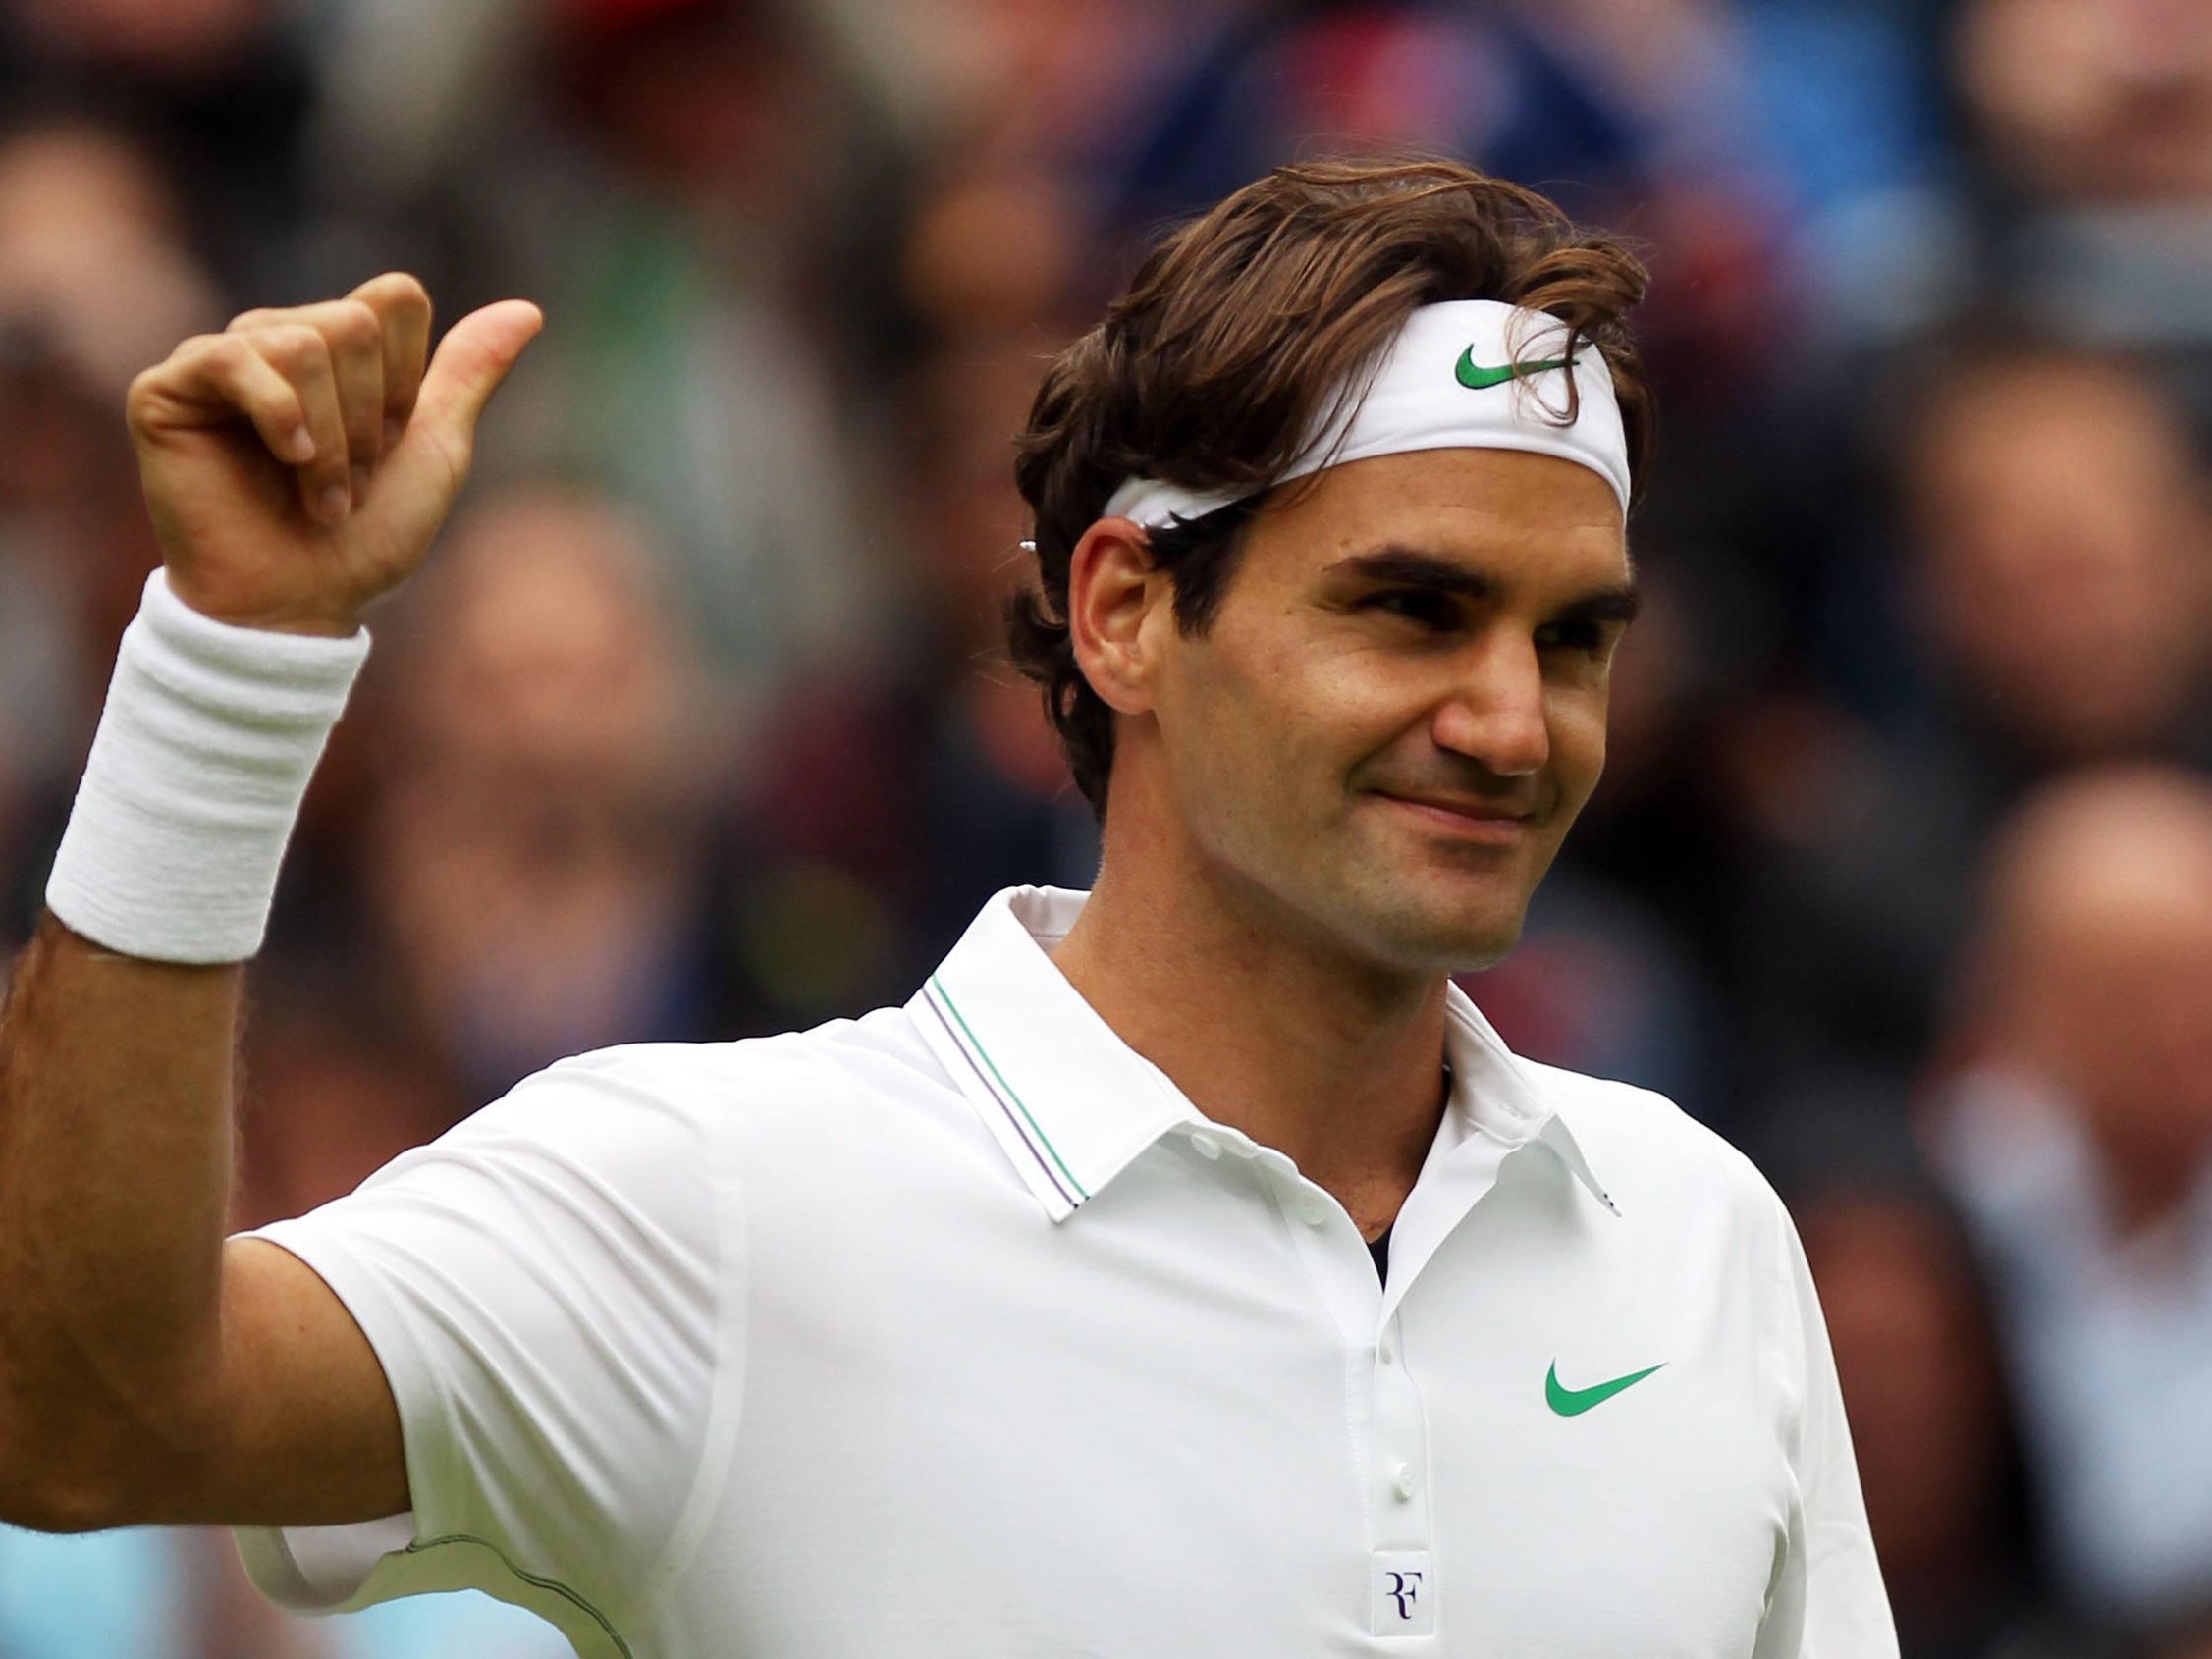 “Good Job": Roger Federer Trains His Daughter, Myla After Skipping